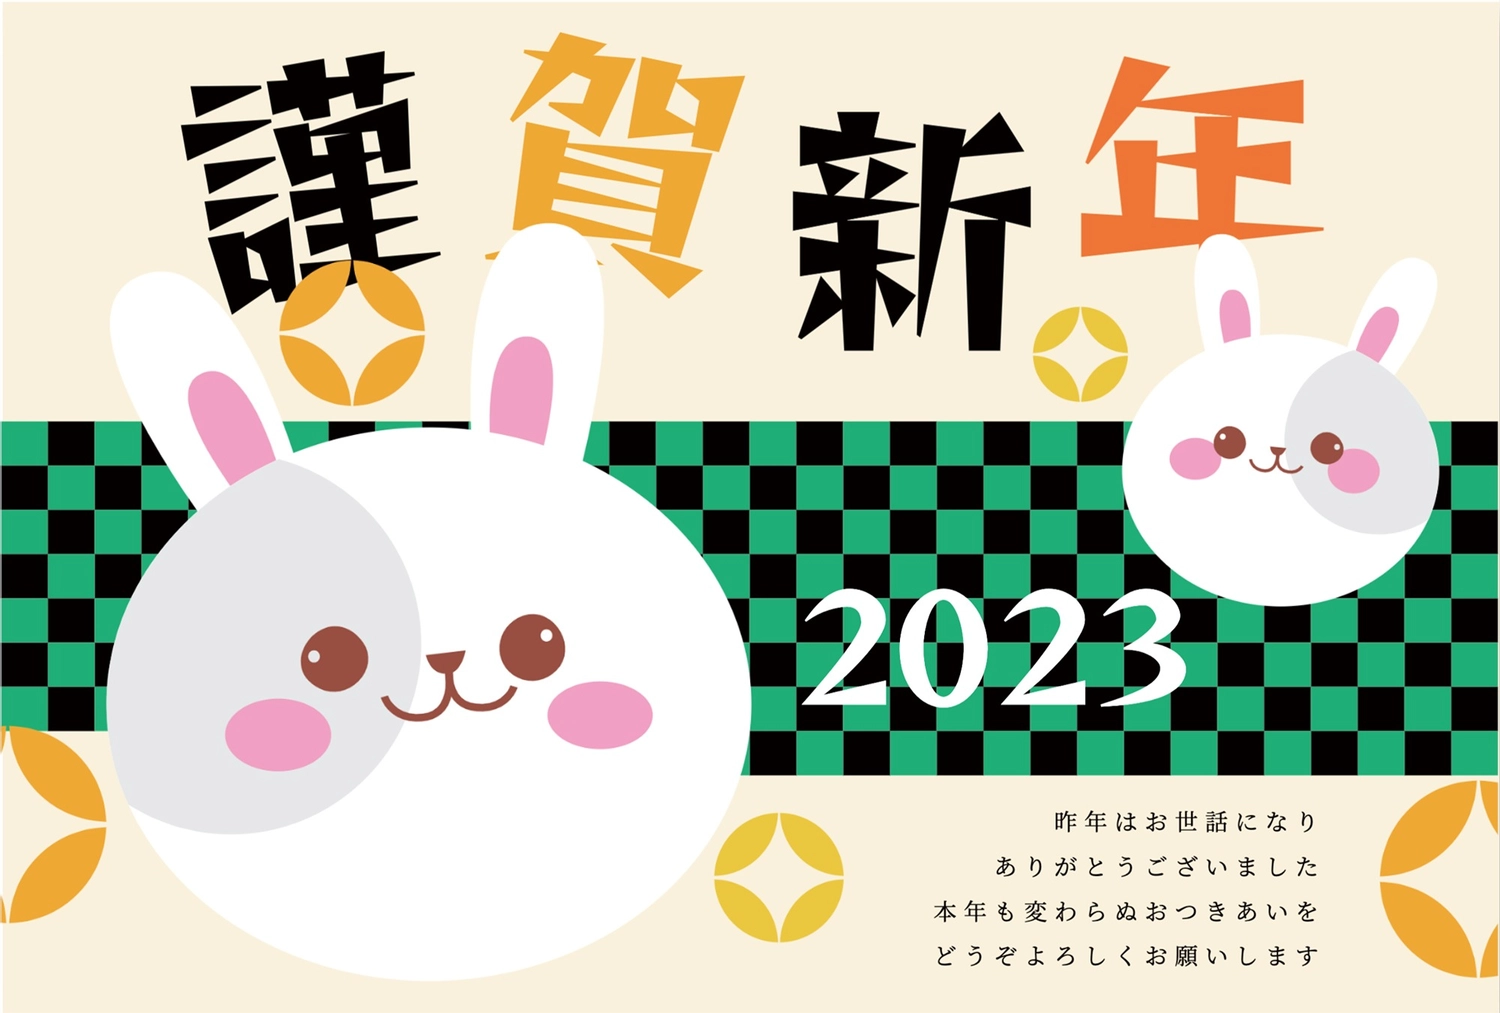 うさぎと市松模様の年賀状, animal, concord, White rabbit, New Year Card template